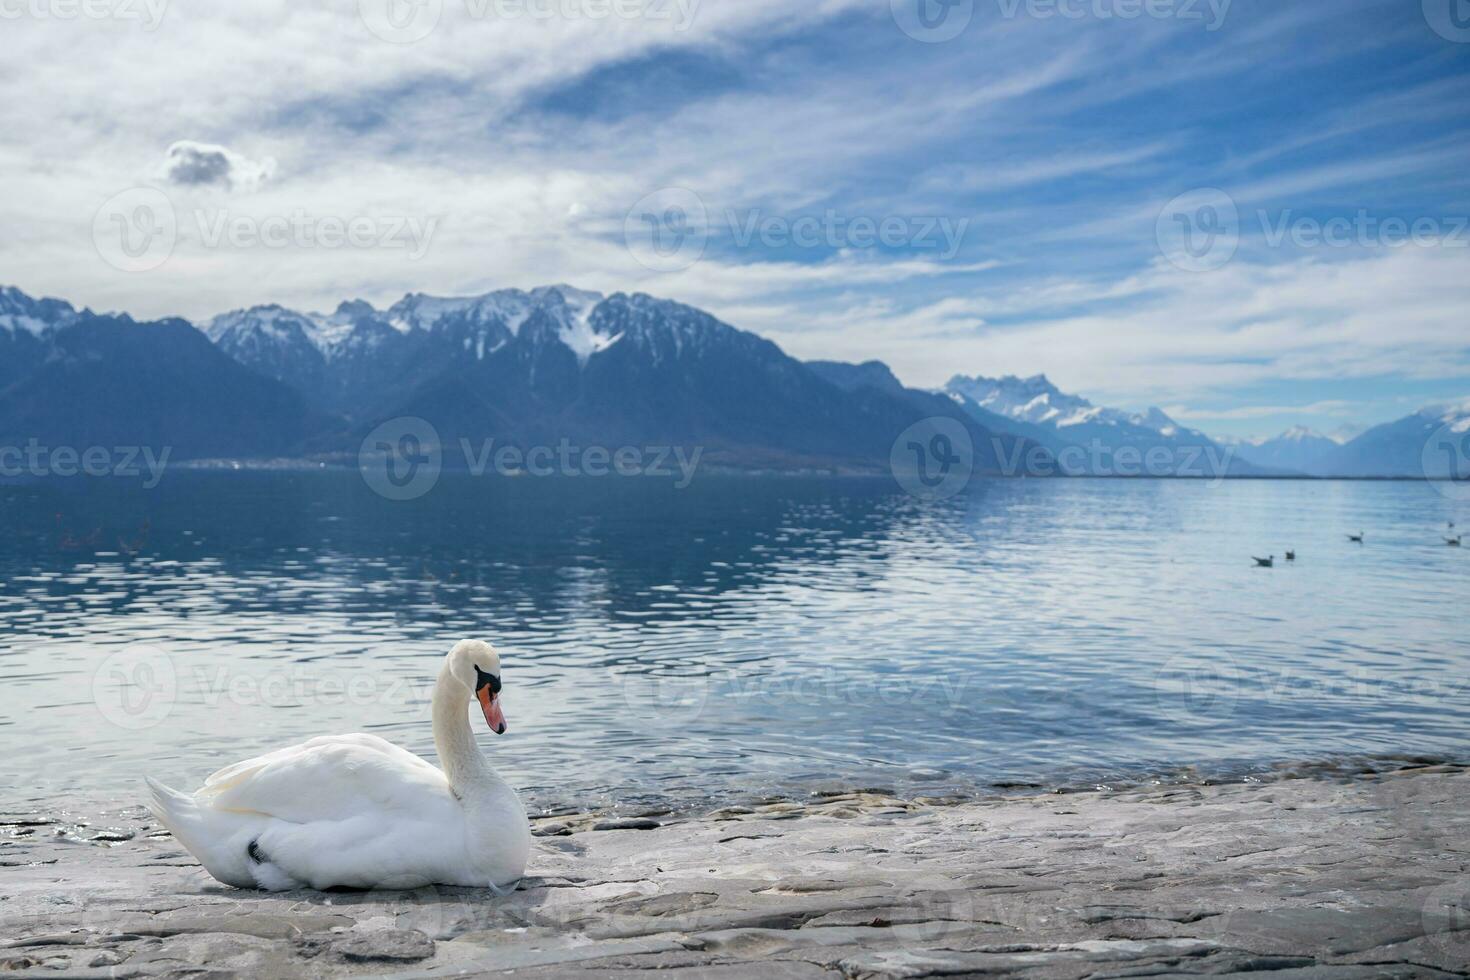 vit svanar på sjö Genève i vevey, schweiz. foto